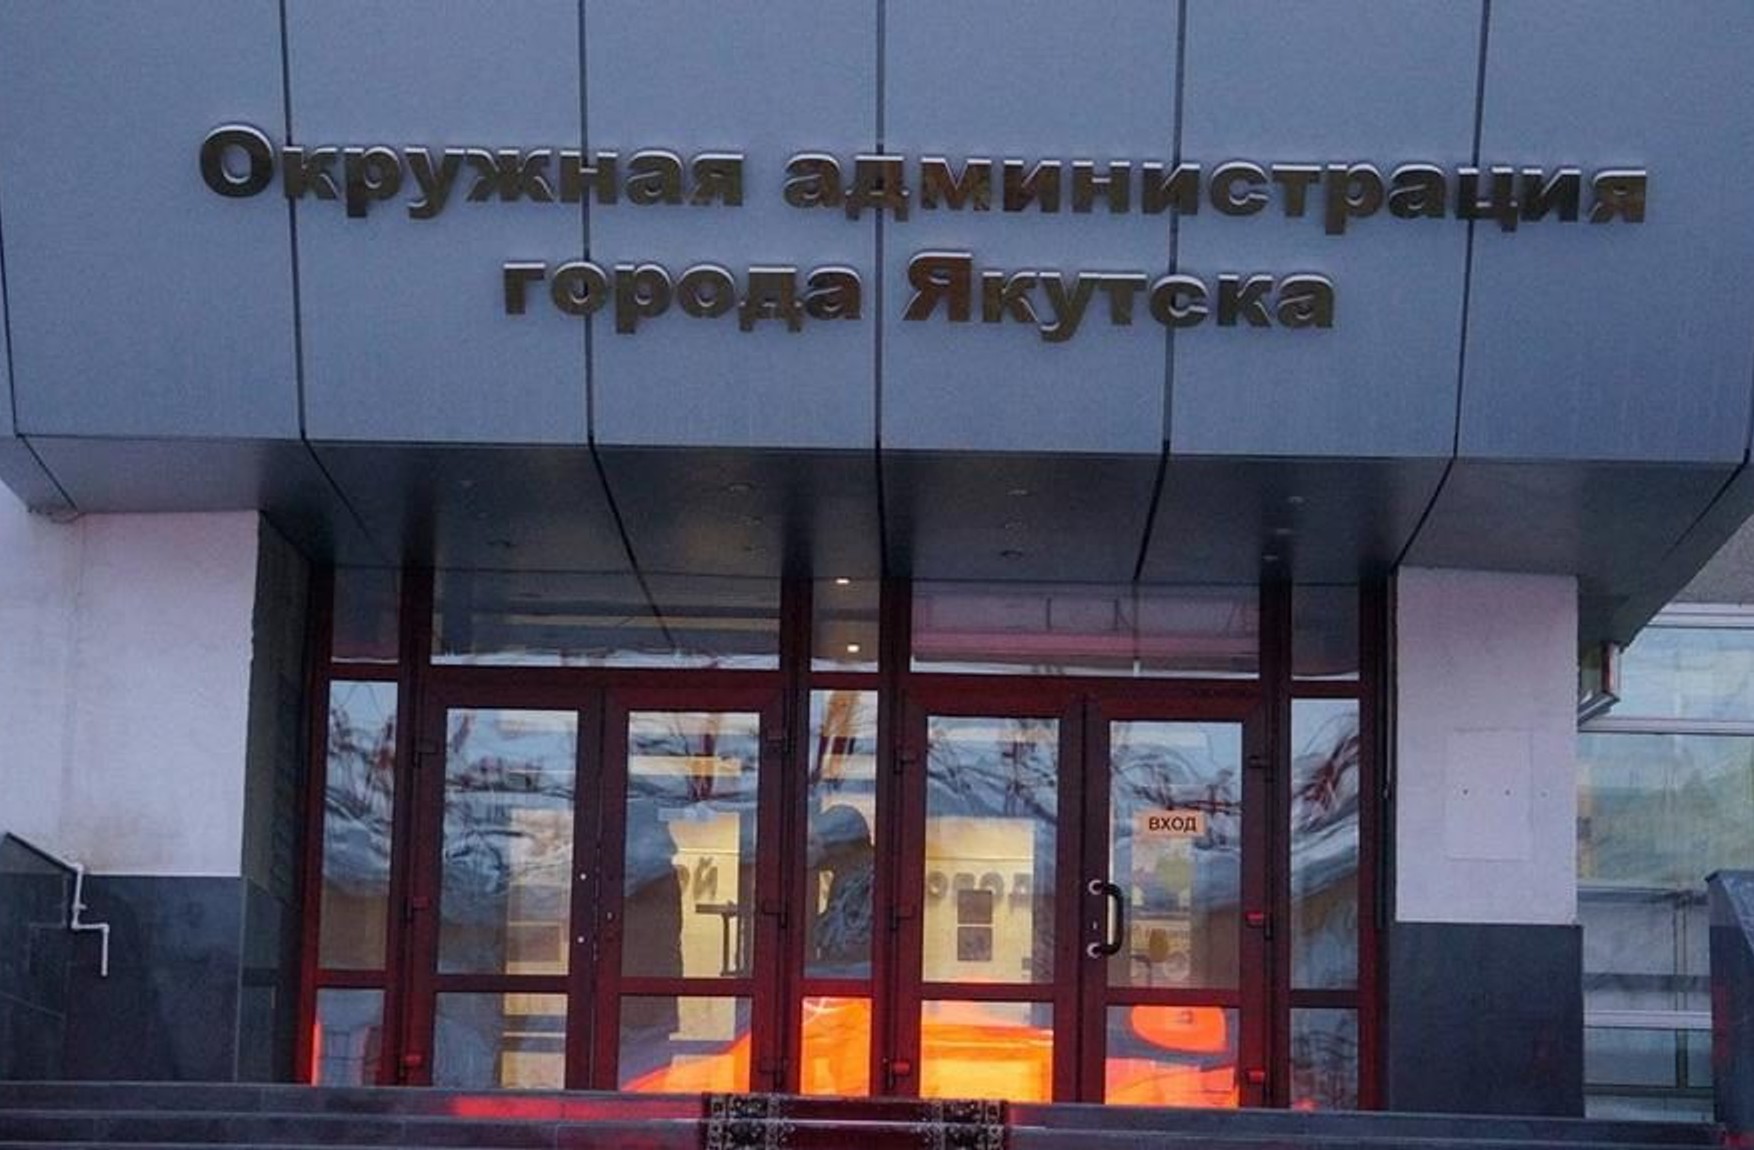 Глава Якутська Сардана Авксентьєва оголосила про продаж будівлі міської адміністрації